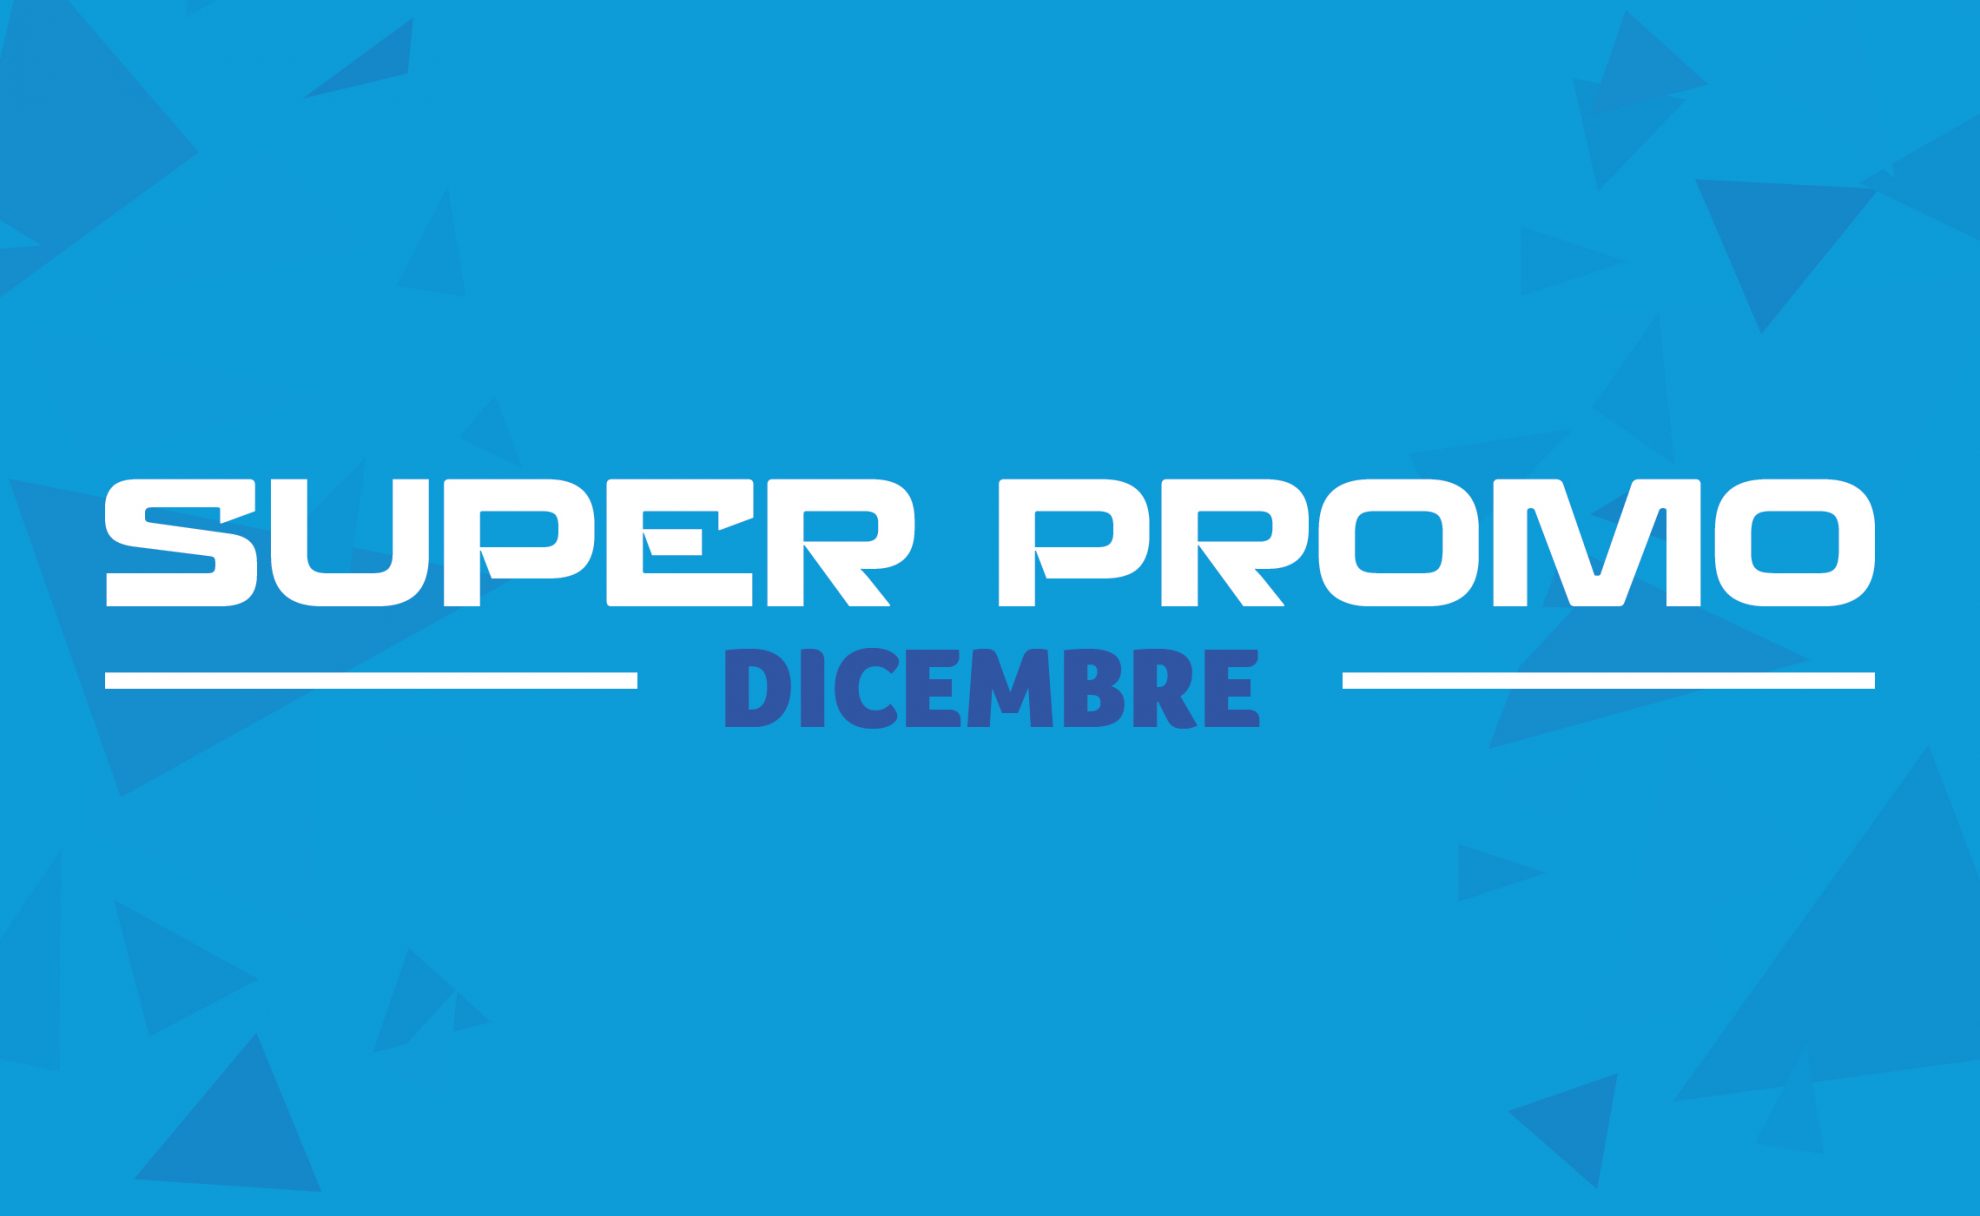 Le Super Promo di dicembre  “Le Super Promo di Tecnogas” è l’appuntamento mensile che vi tiene costantemente aggiornati sulle migliori offerte della nostra gamma.